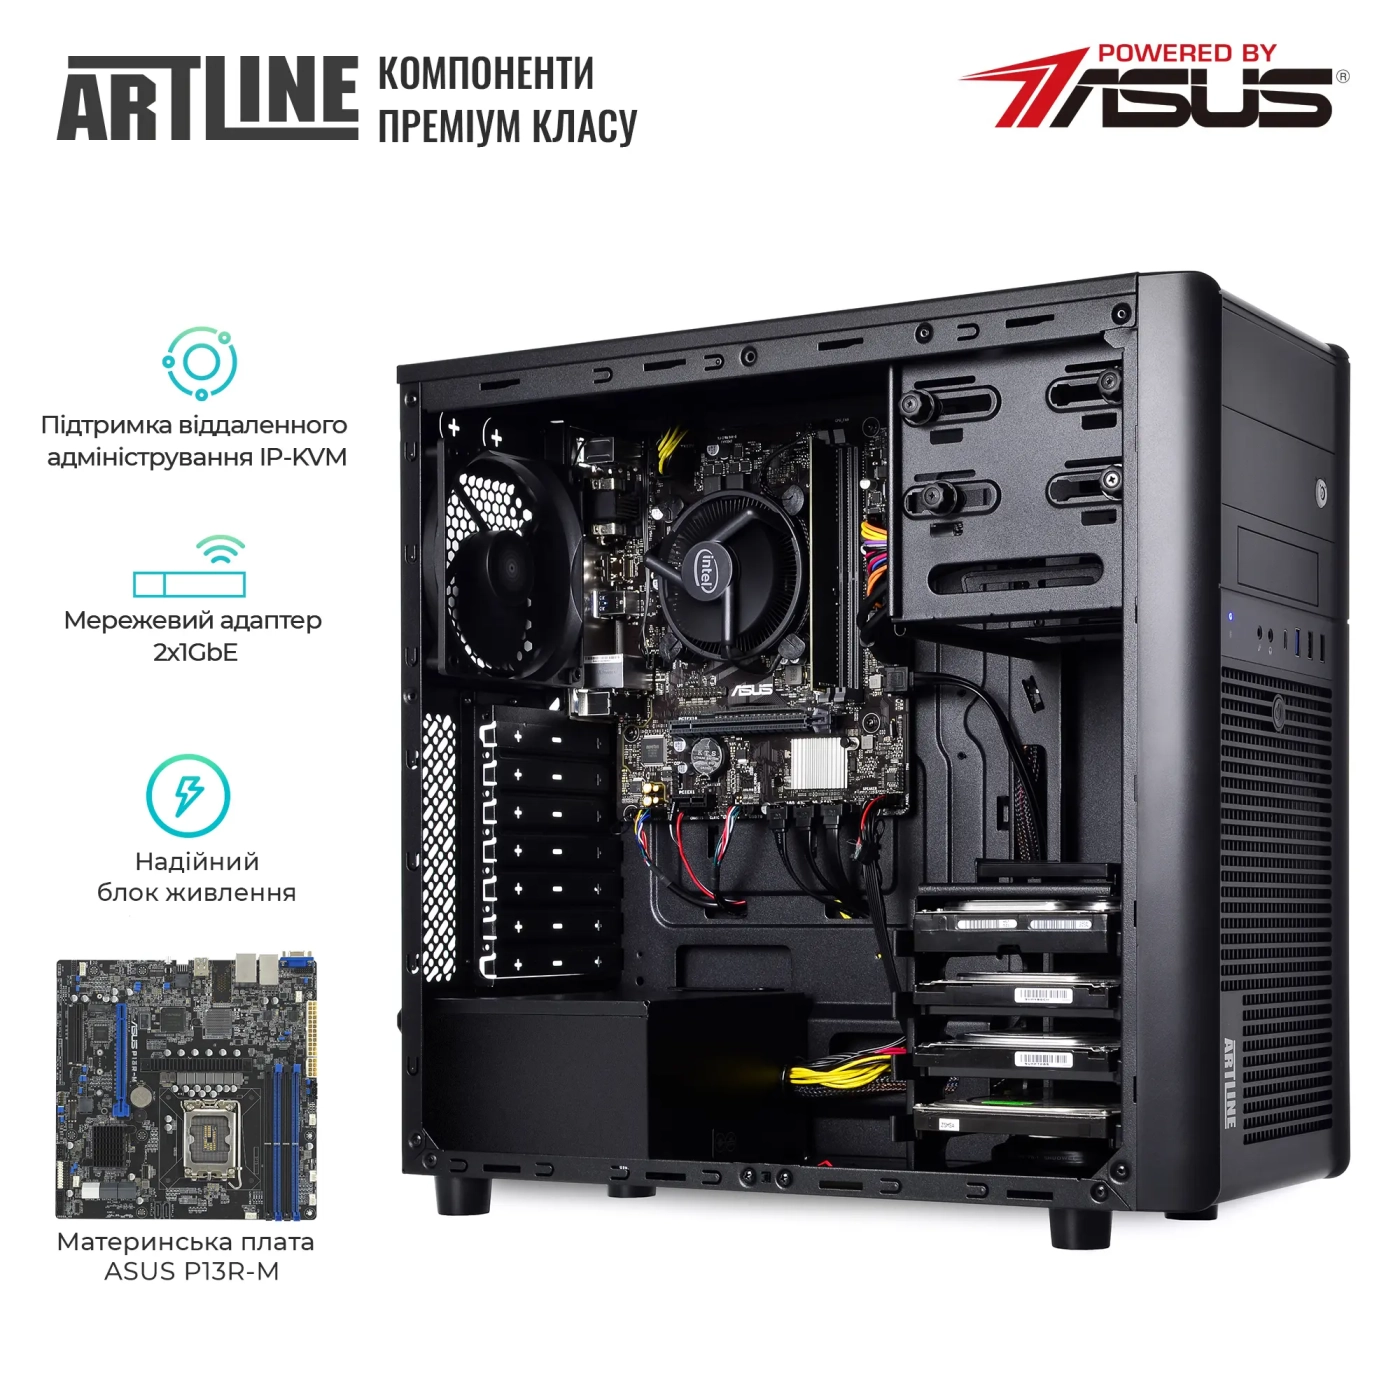 Купить Сервер ARTLINE Business T35 (T35v43) - фото 2